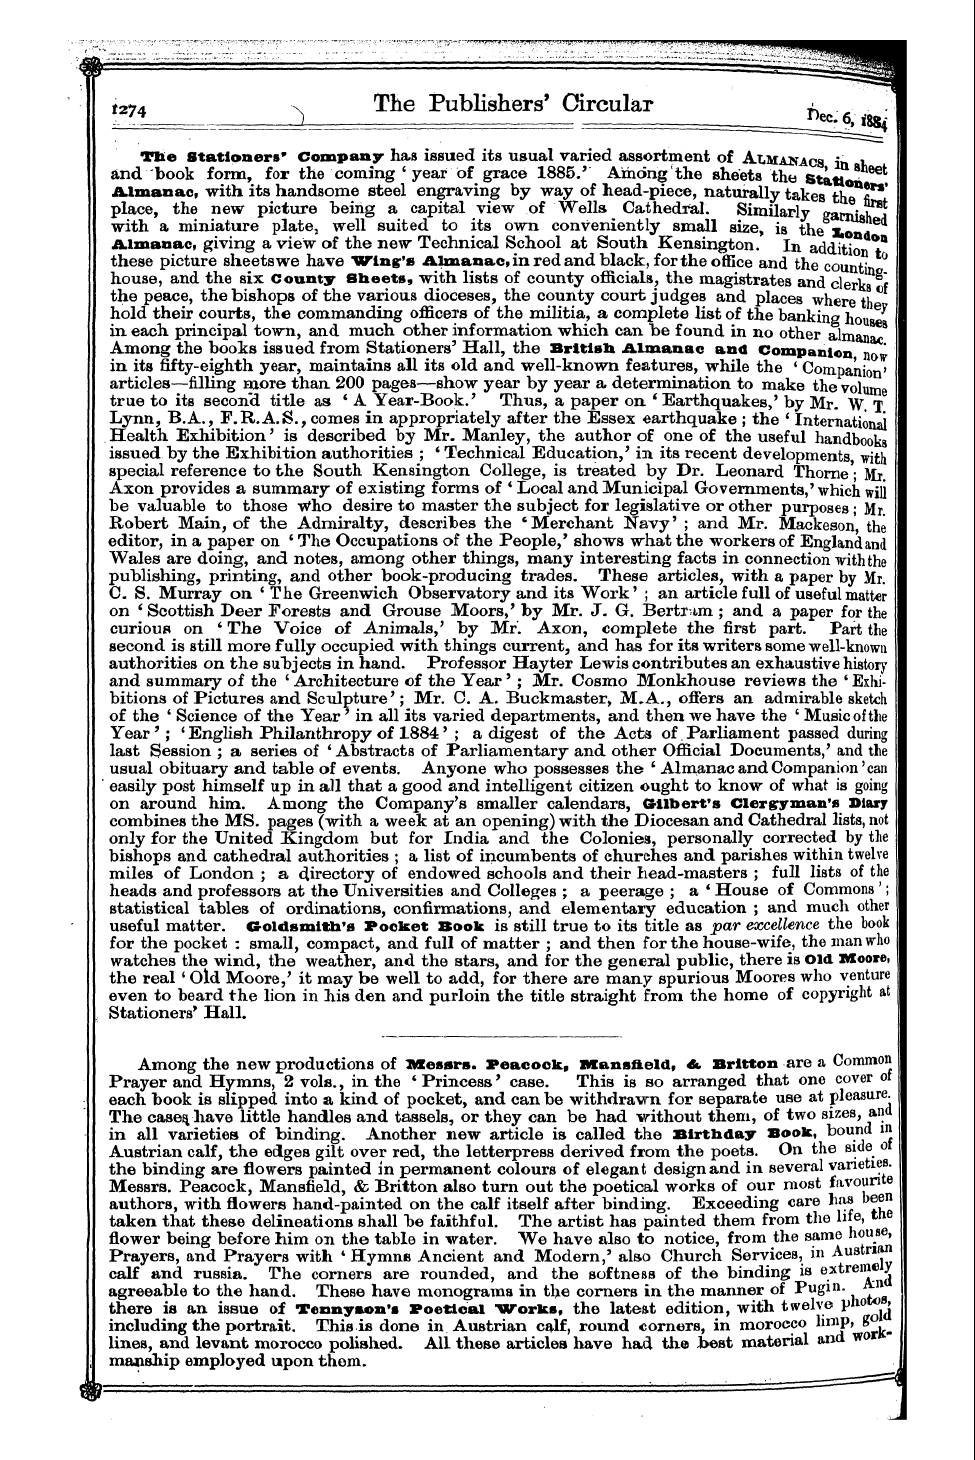 Publishers’ Circular (1880-1890): jS F Y, 1st edition - Ar03400